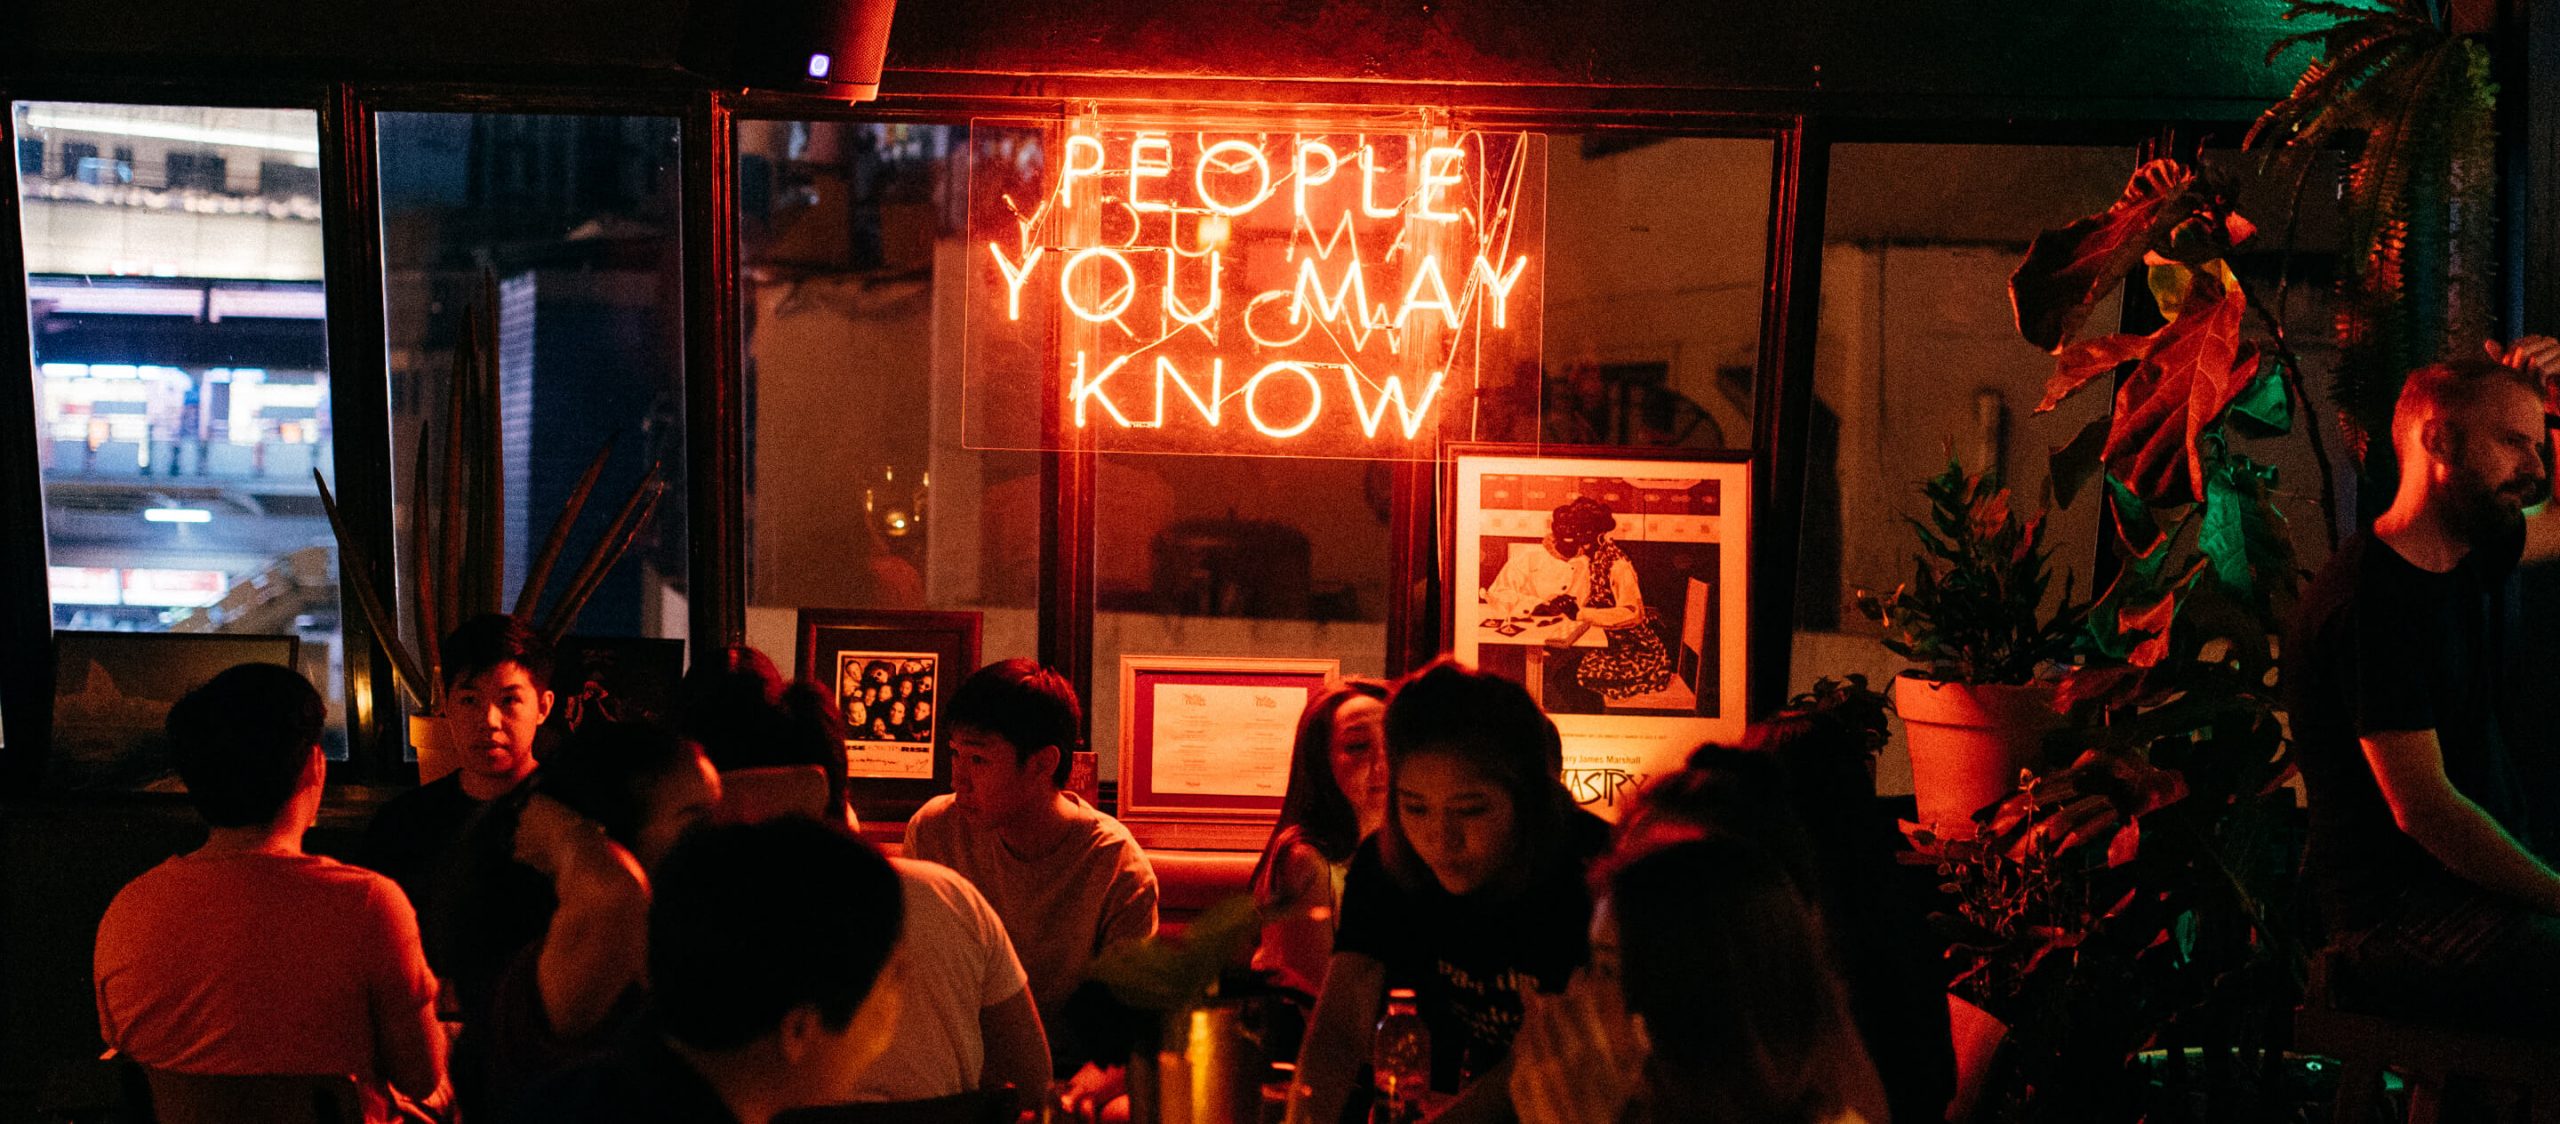 ดื่มแด่ความชอบที่ตรงกันที่ ‘Mutual Bar’ บาร์ที่คุณอาจเจอ mutual friends